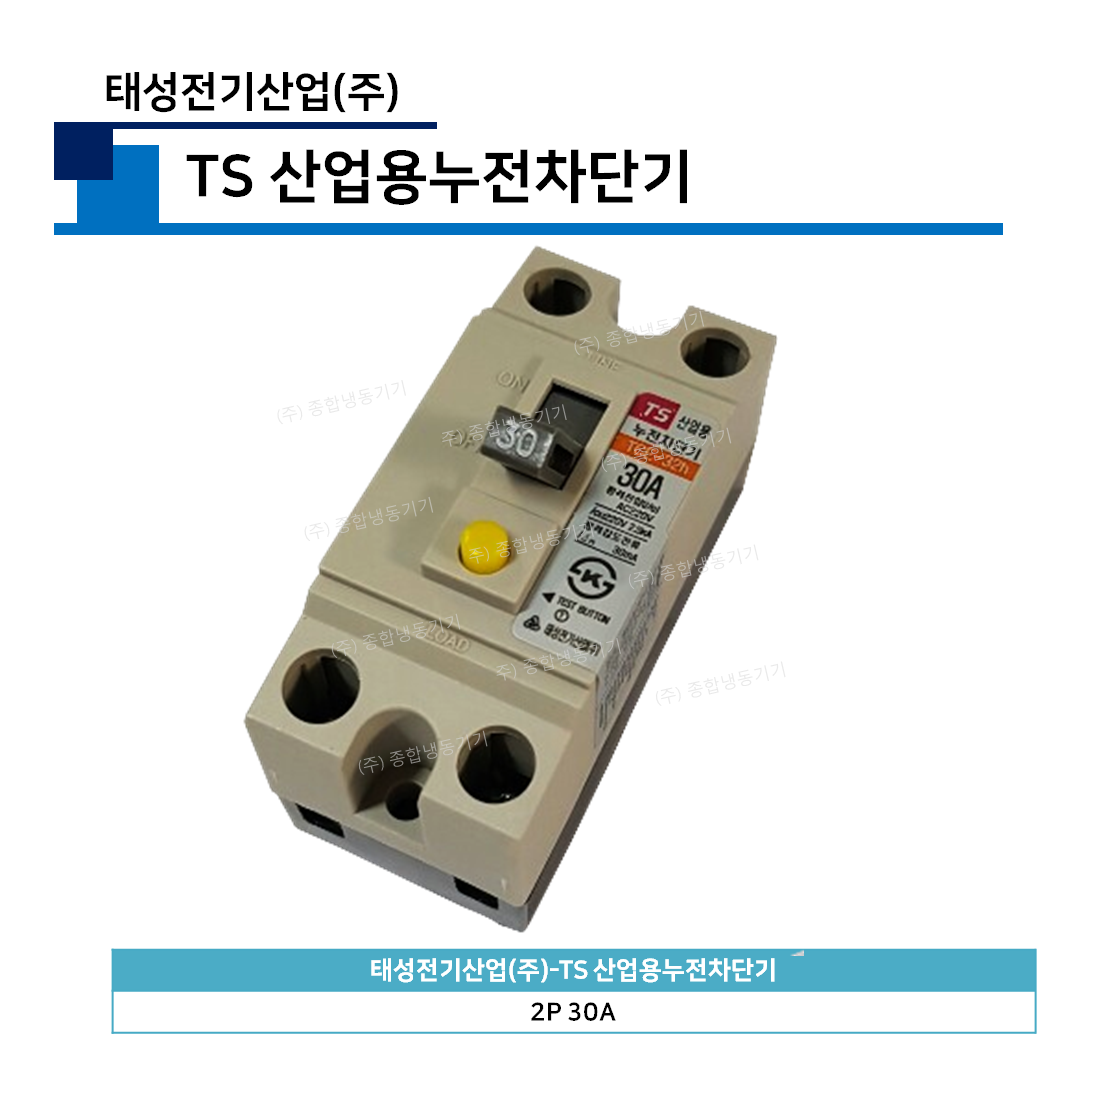 태성전기산업(주)-TS 산업용누전차단기